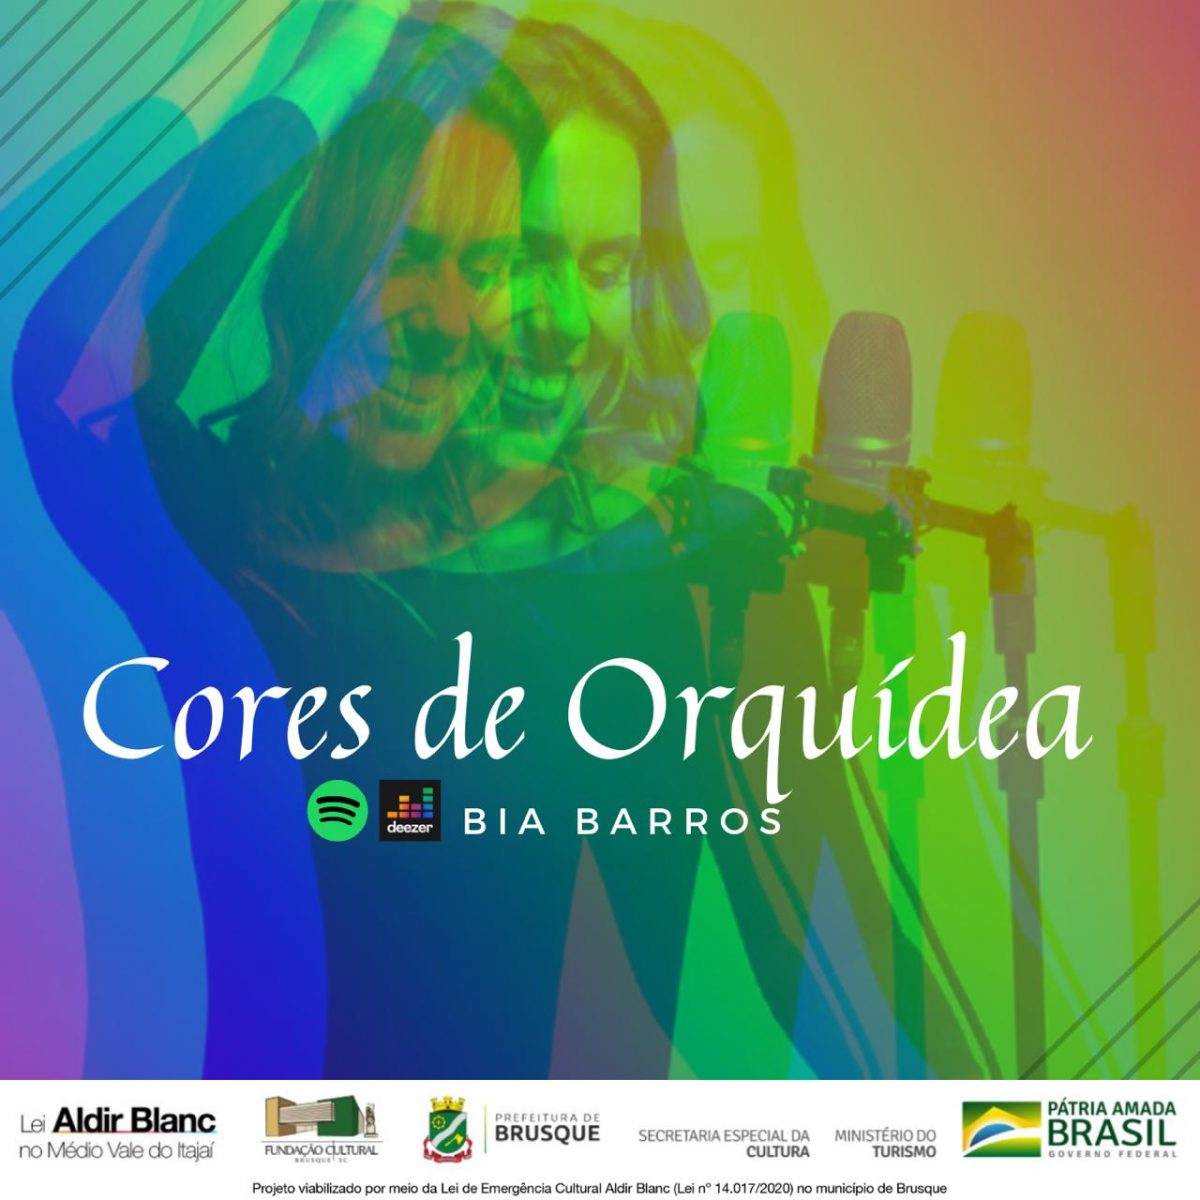 Lei Aldir Blanc: Bia Barros lança músicas autorais